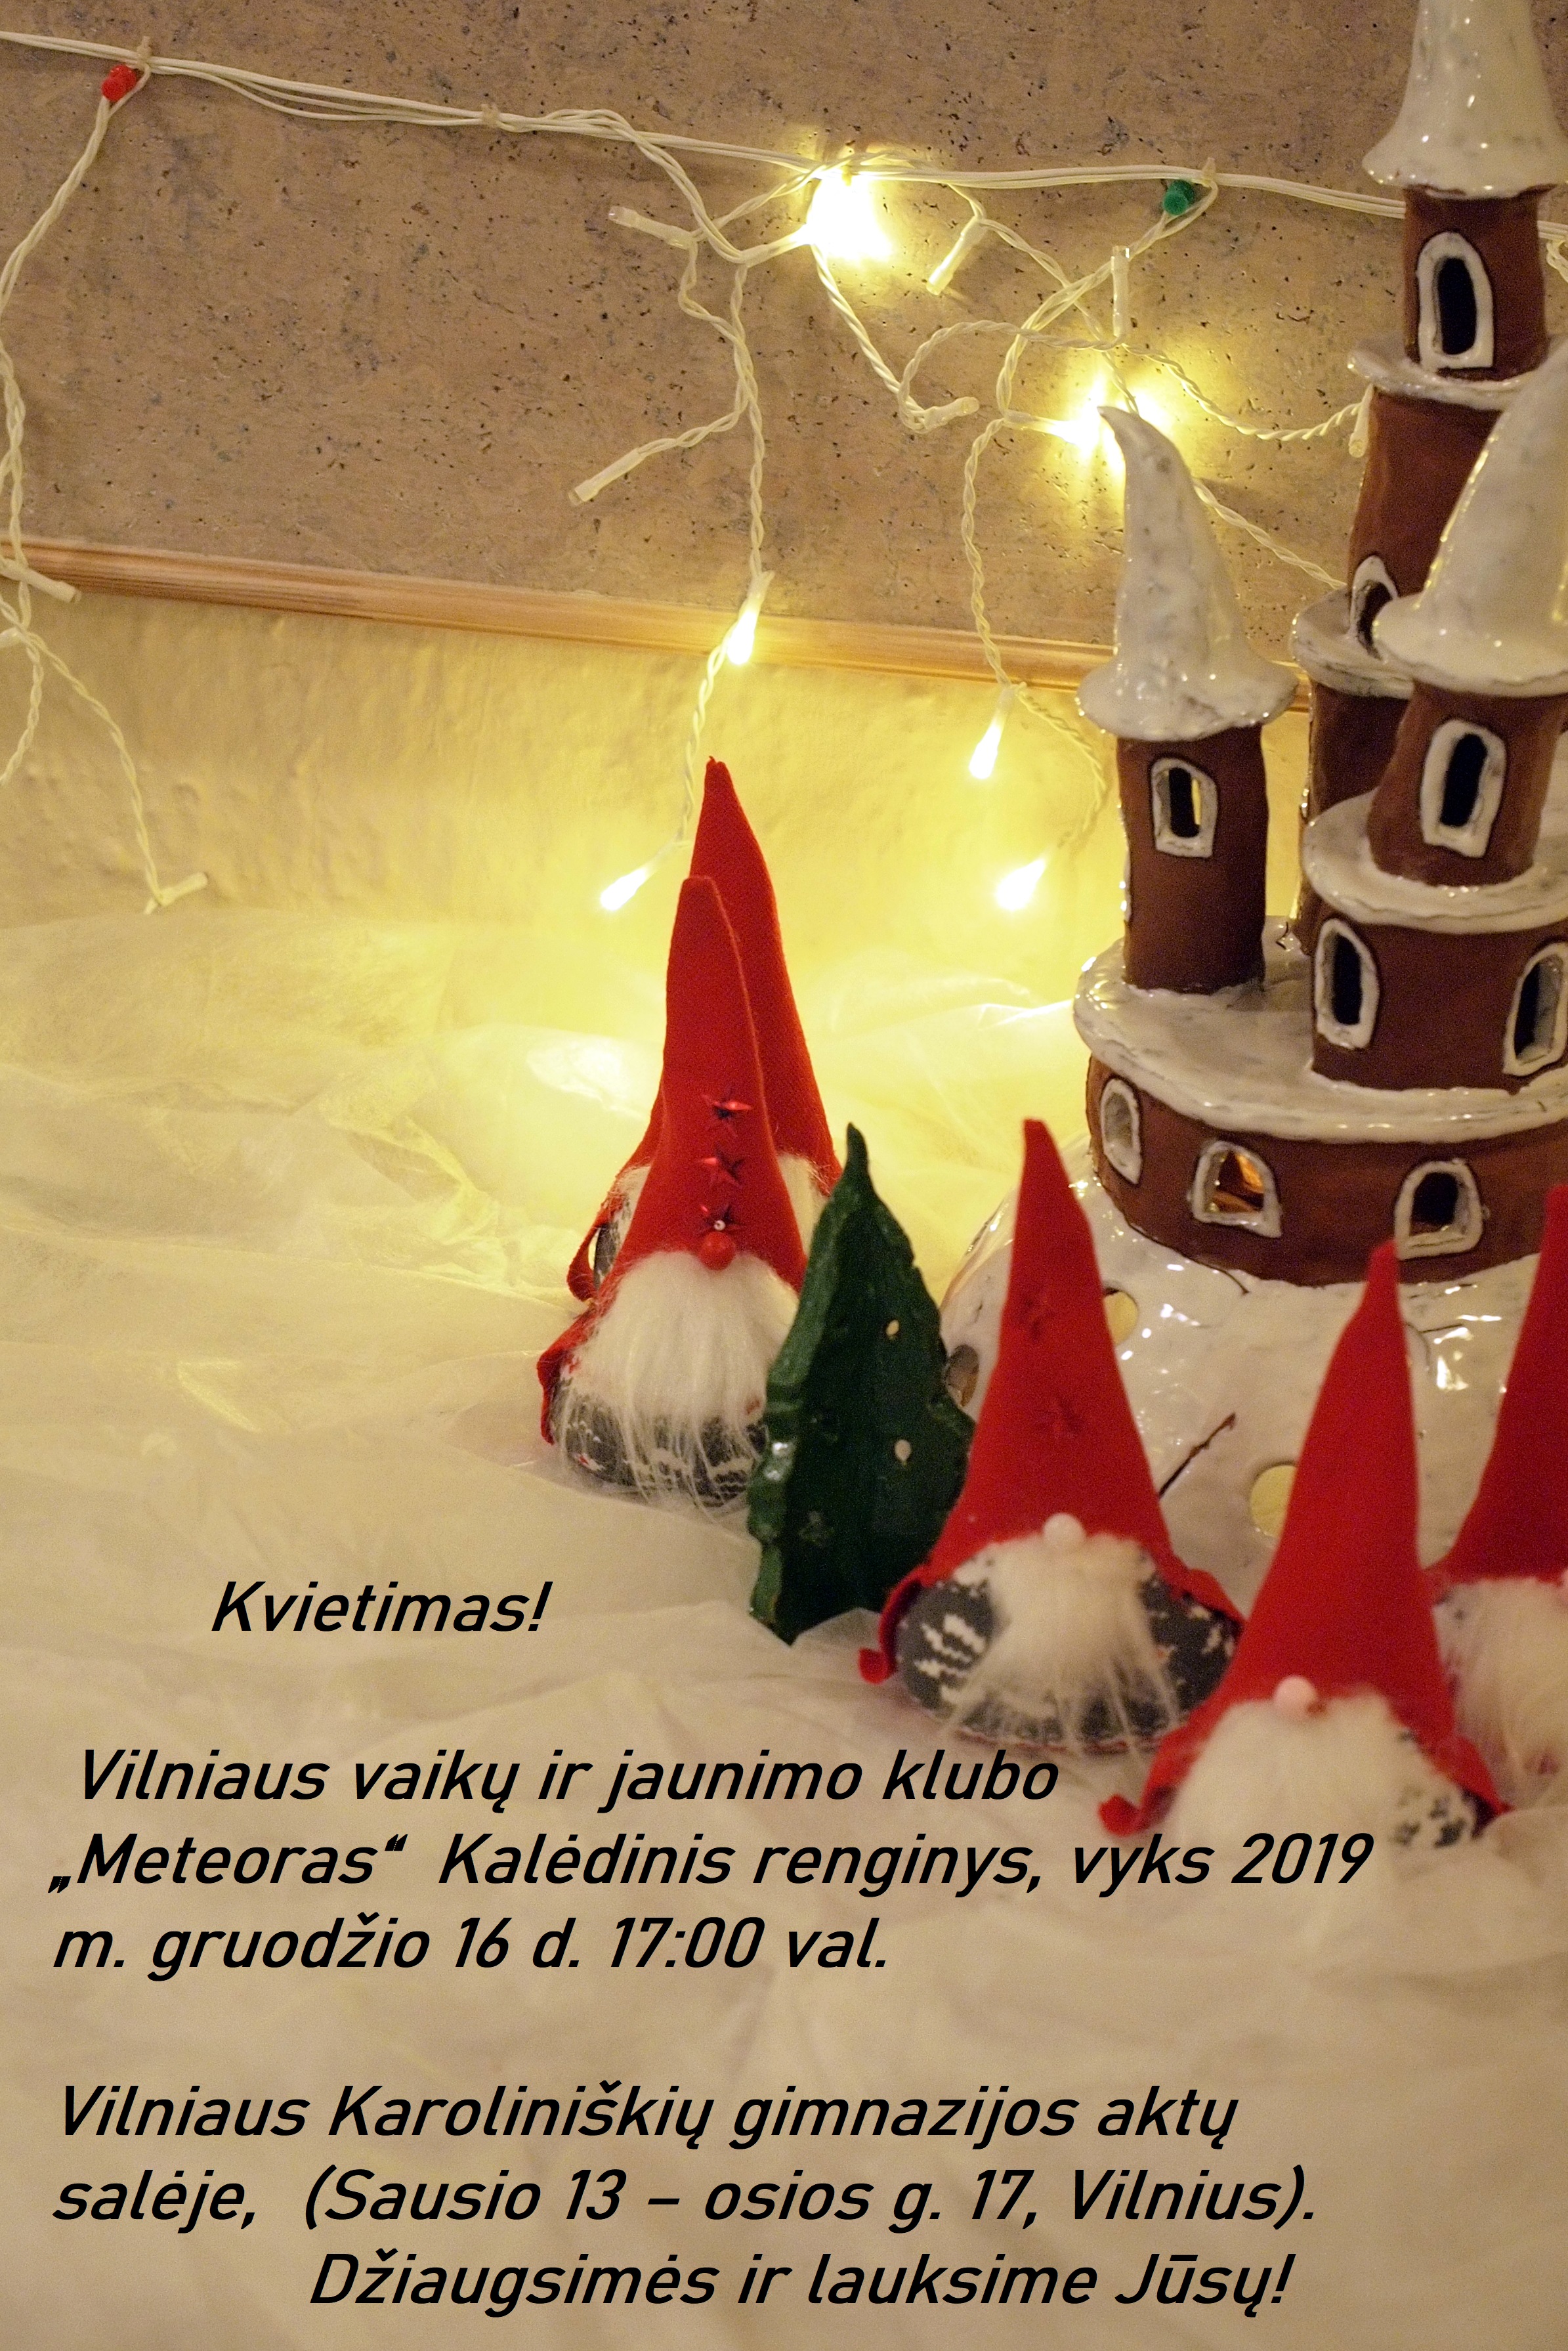 OLYMPUS DIGITAL CAMERA Kalėdinis renginys Kalėdinis renginys Kvietimas 2019